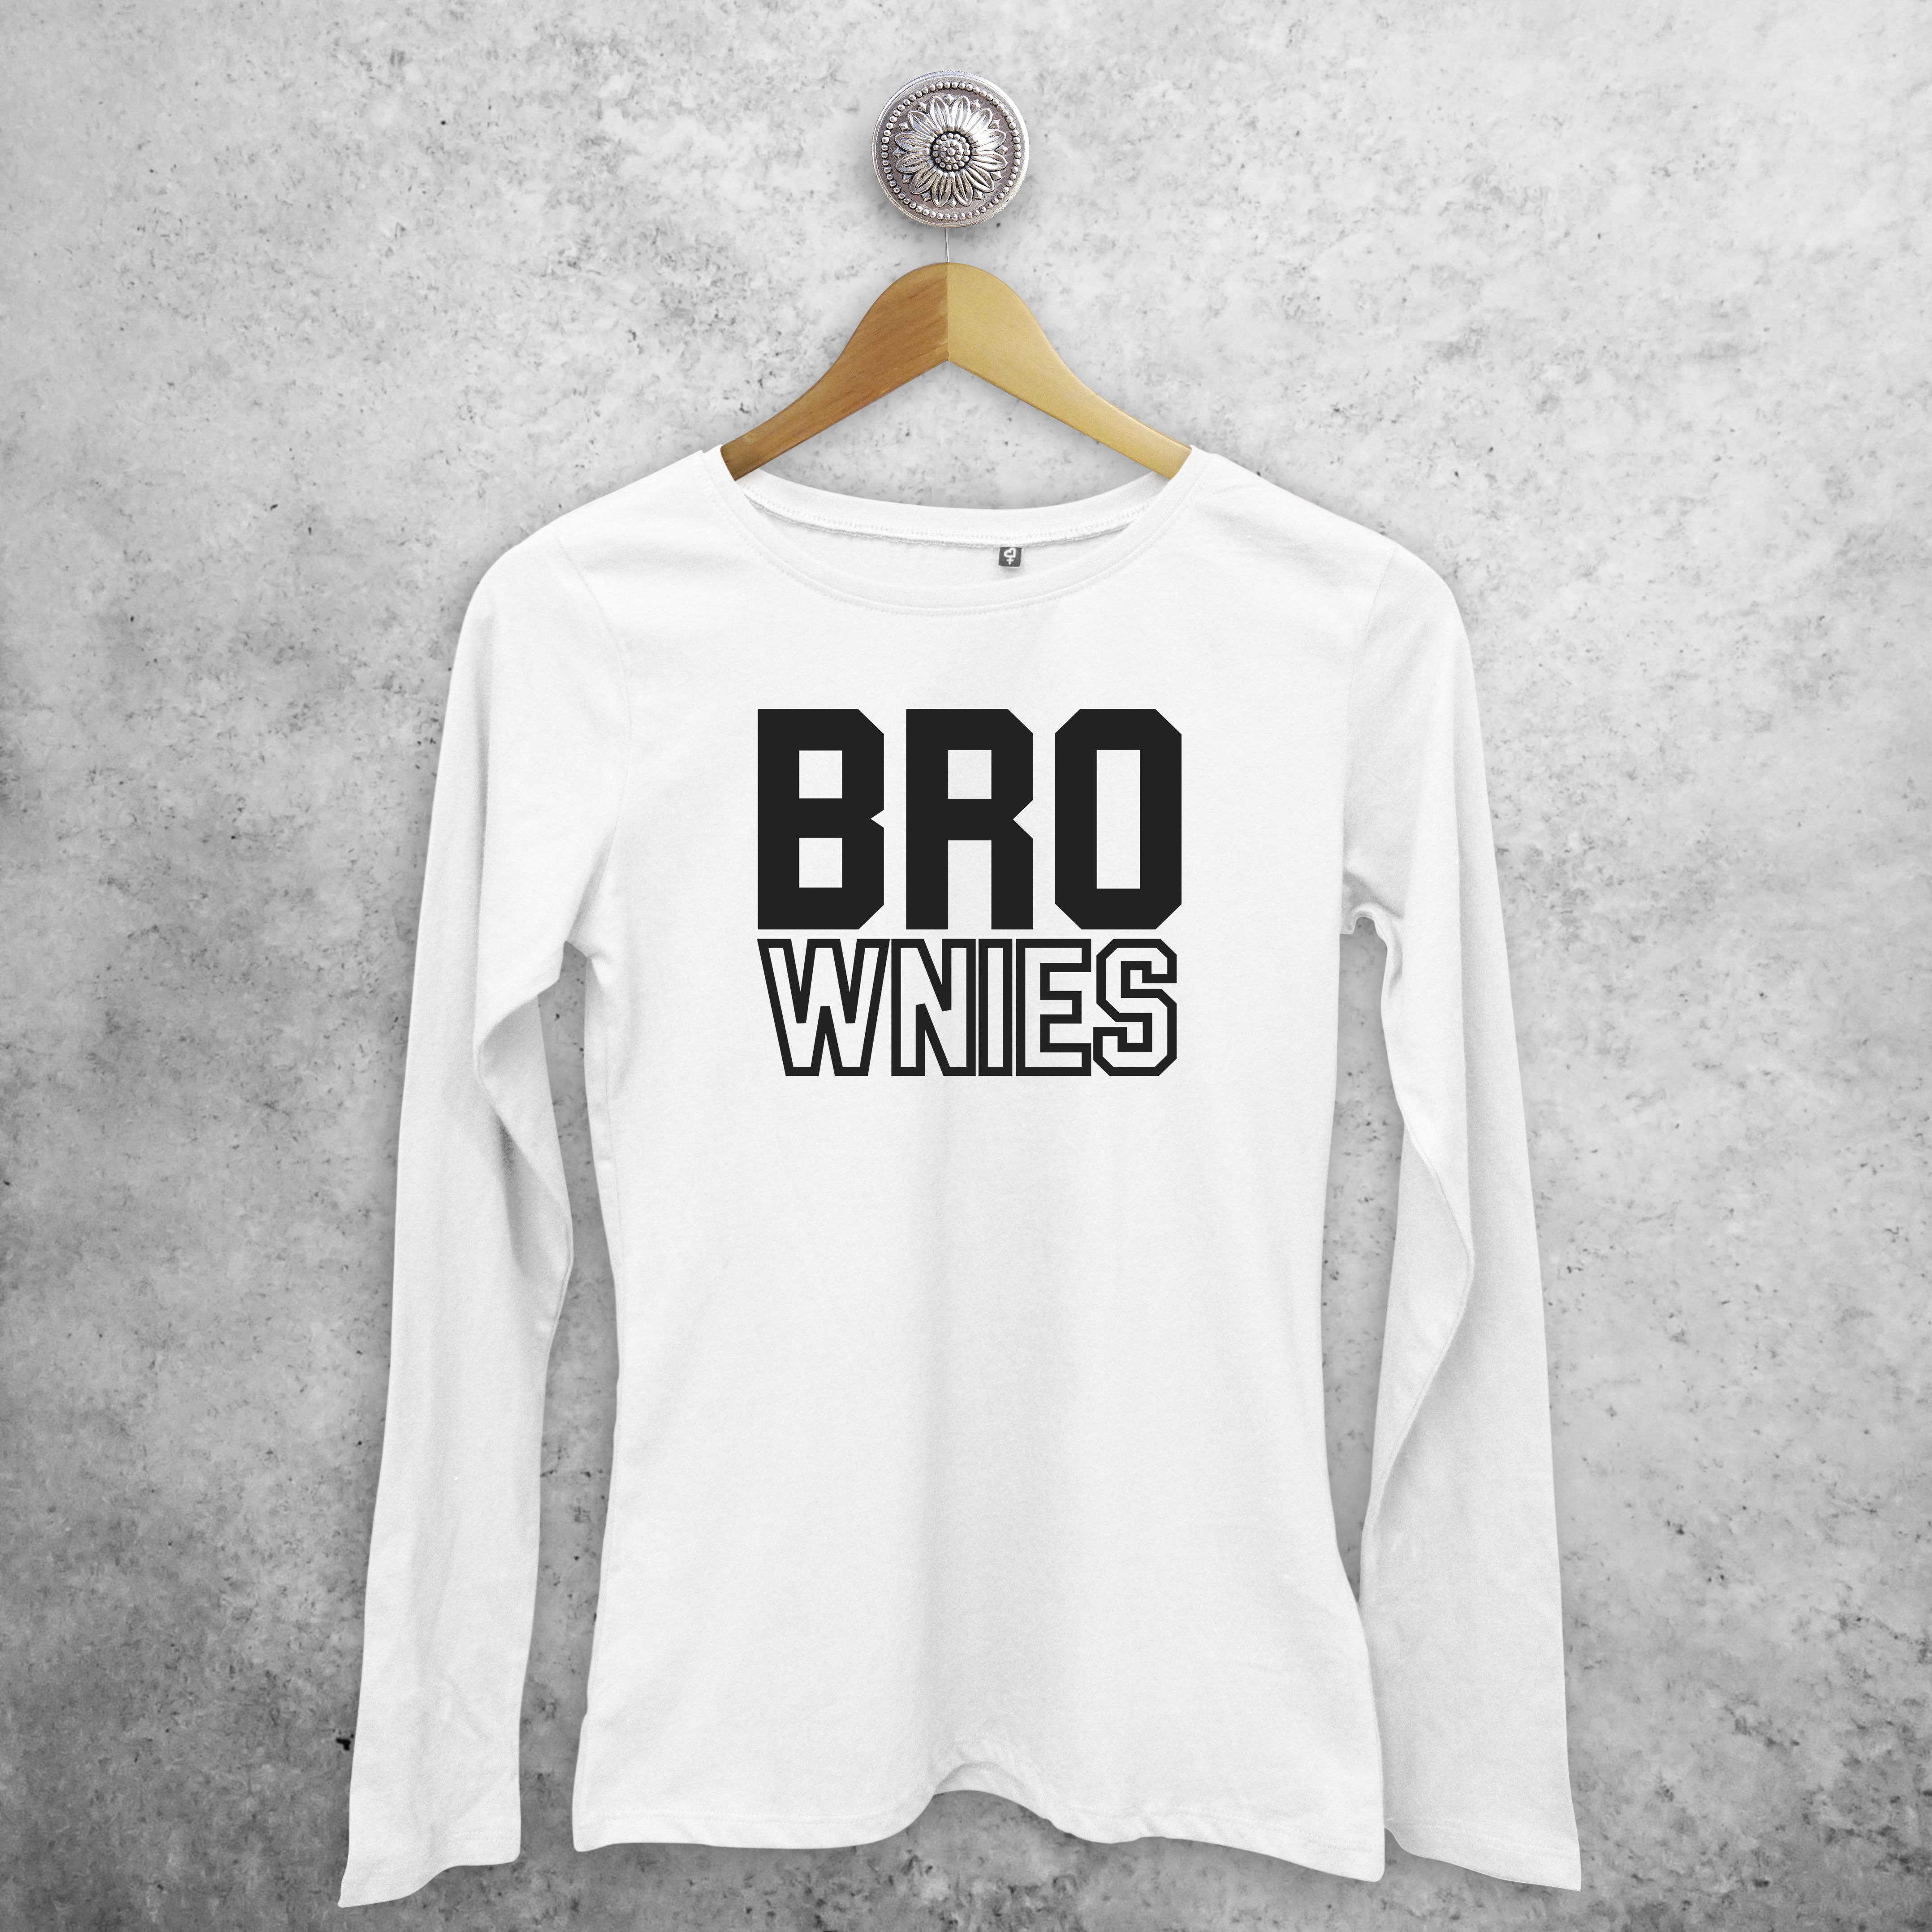 'Bro-wnies' adult longsleeve shirt